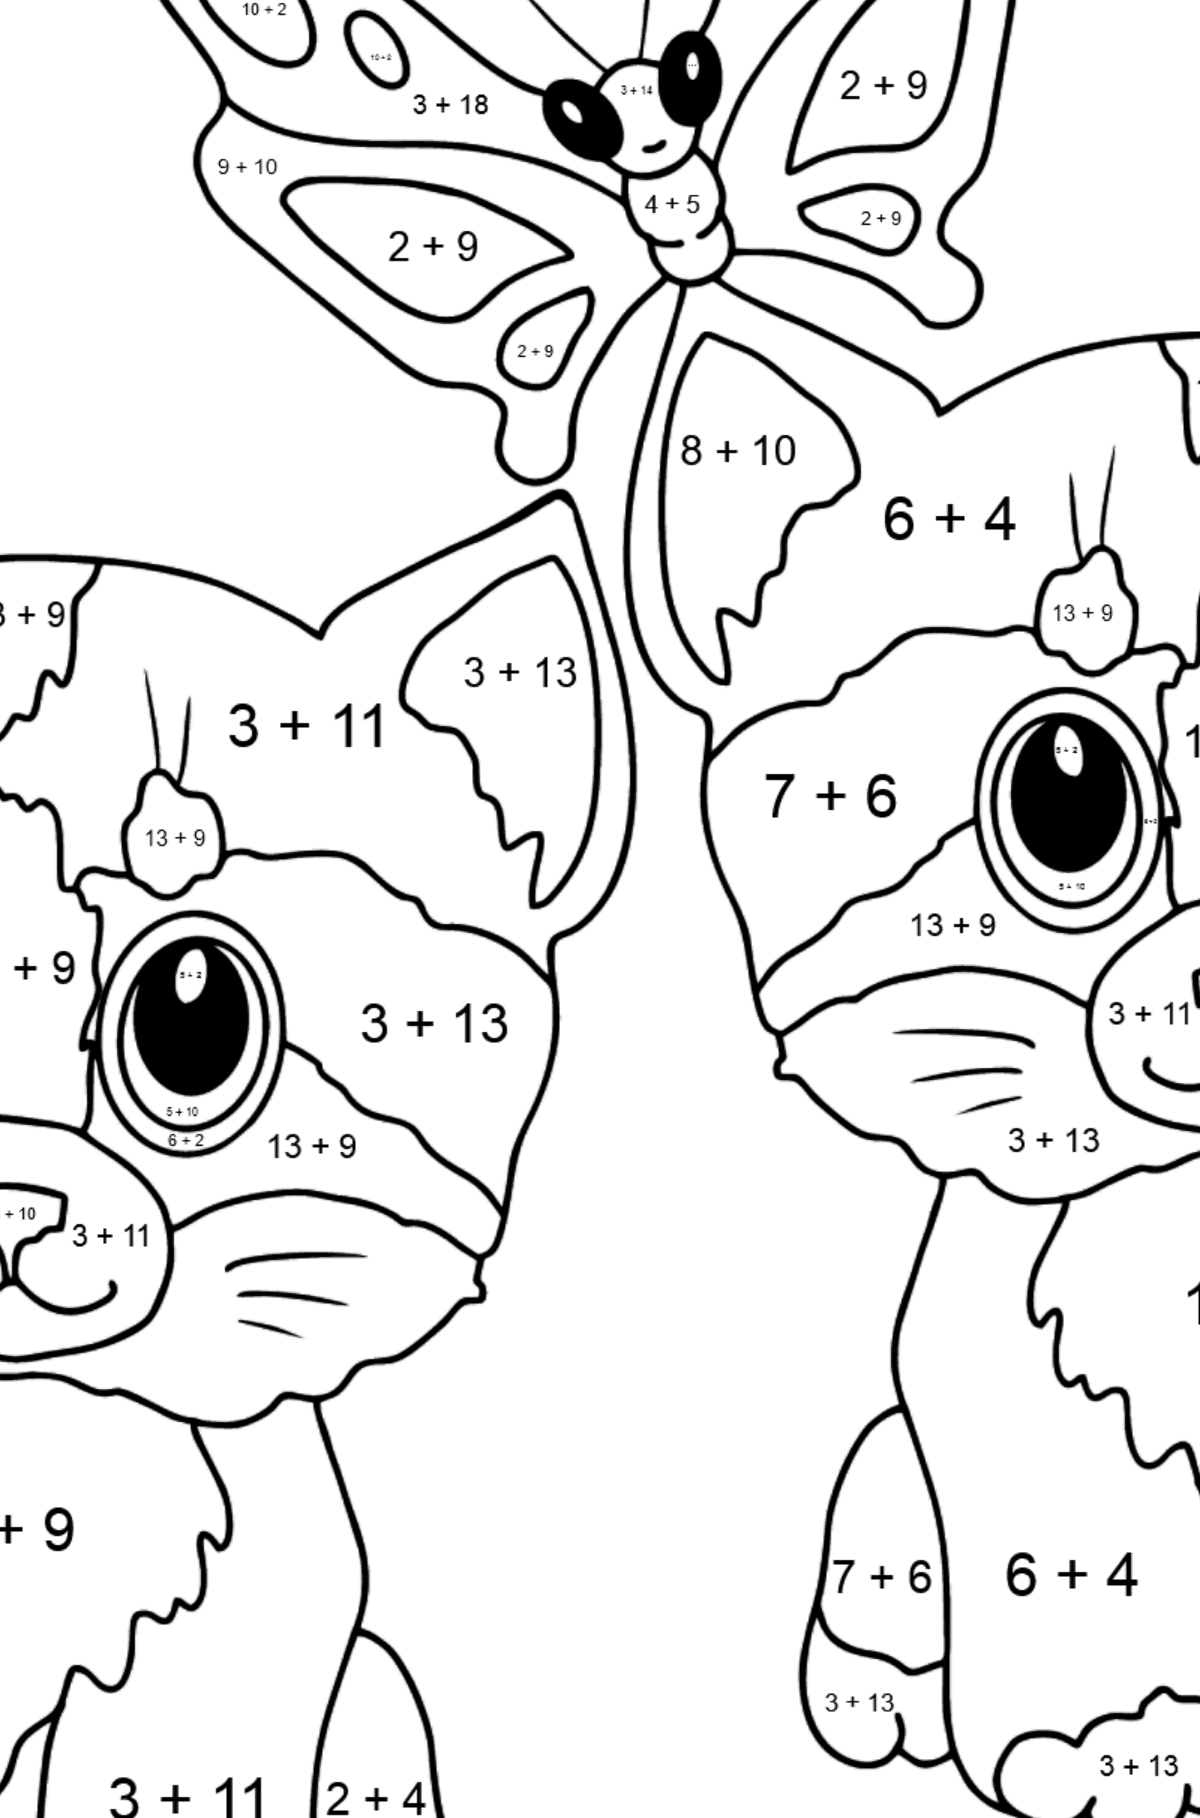 Disegno da colorare di simpatici gattini per i più piccoli - Colorazione matematica - Addizione per bambini